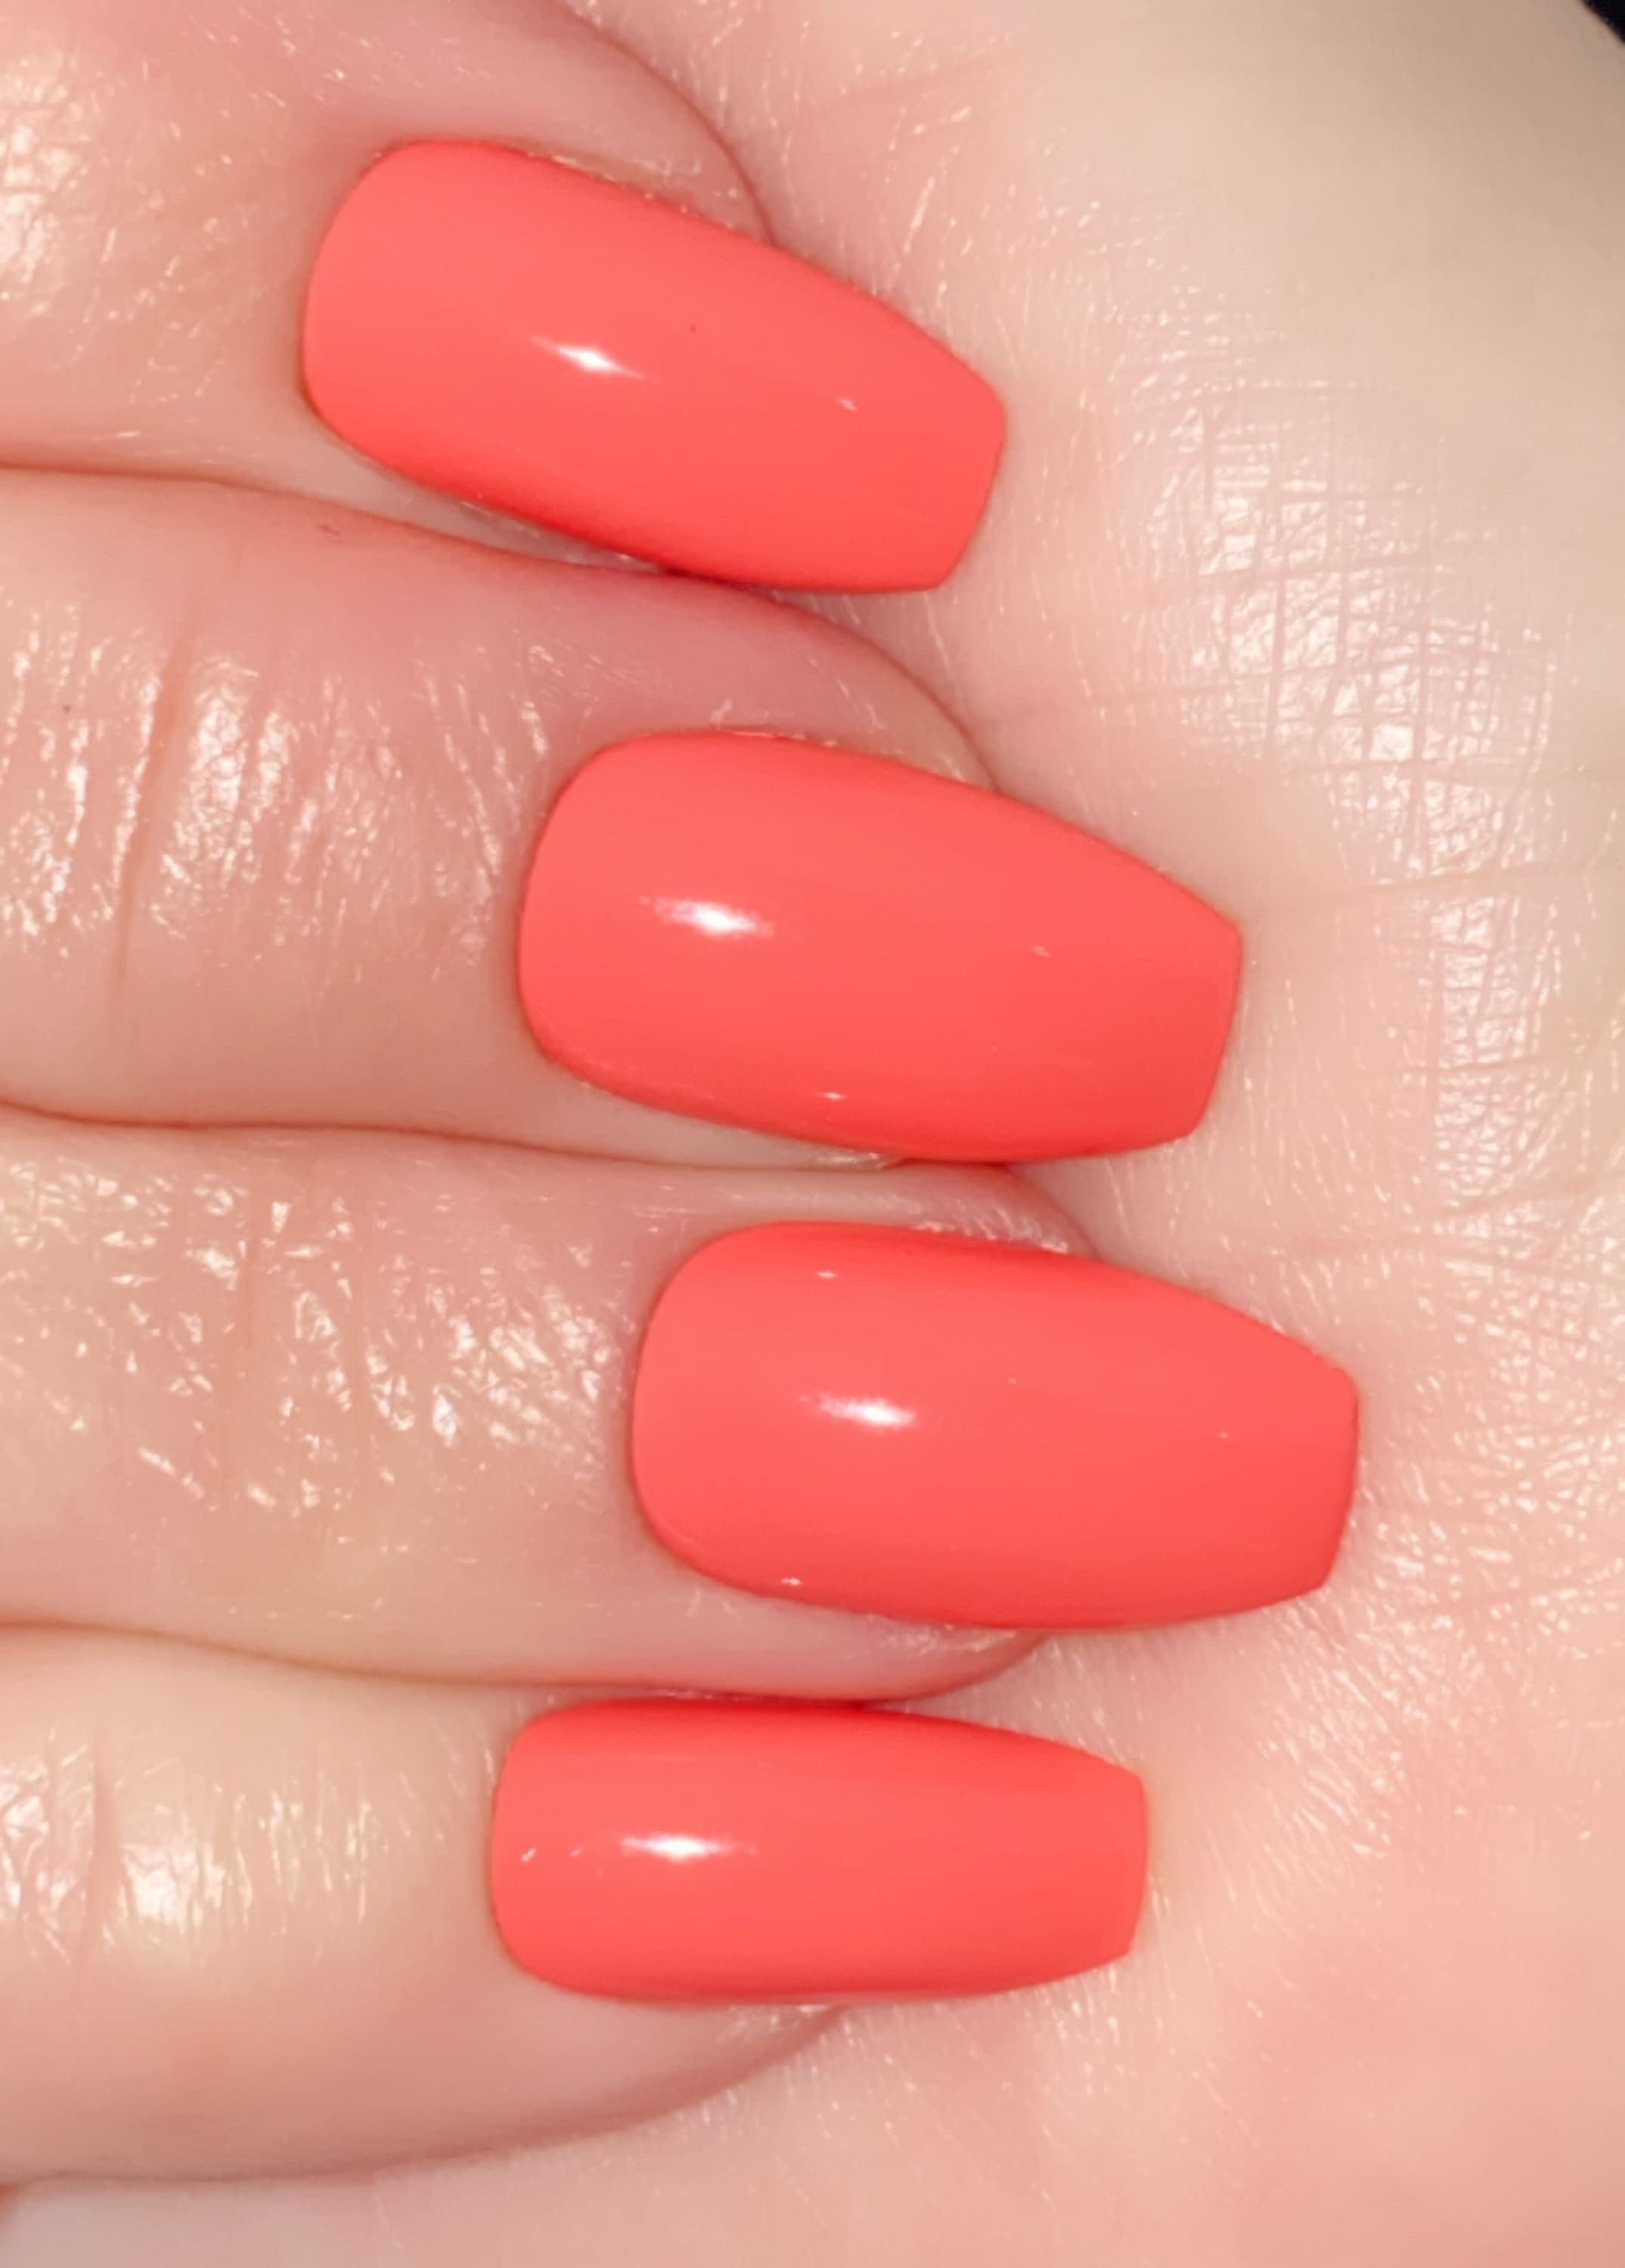 Neon coral nails | Neon coral nails, Coral nails, Spring break nails